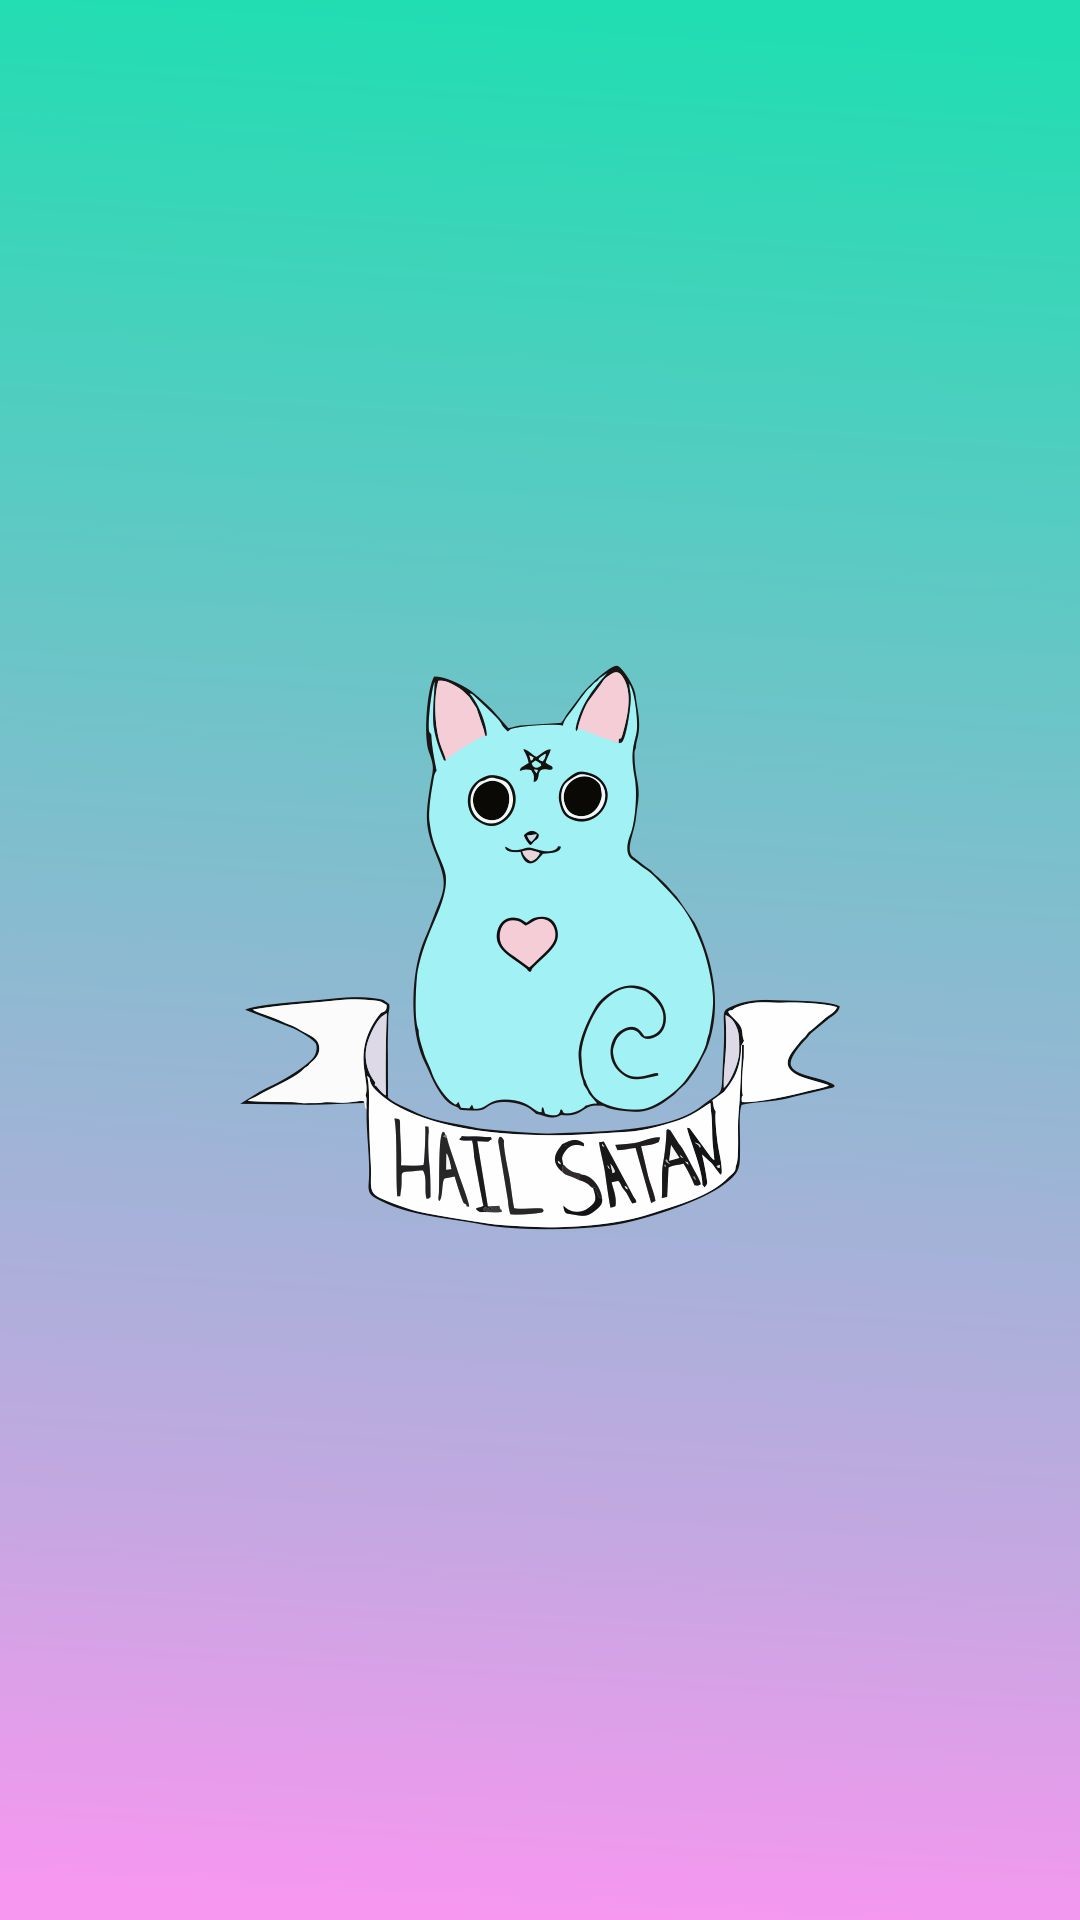 Hail Satan Cat